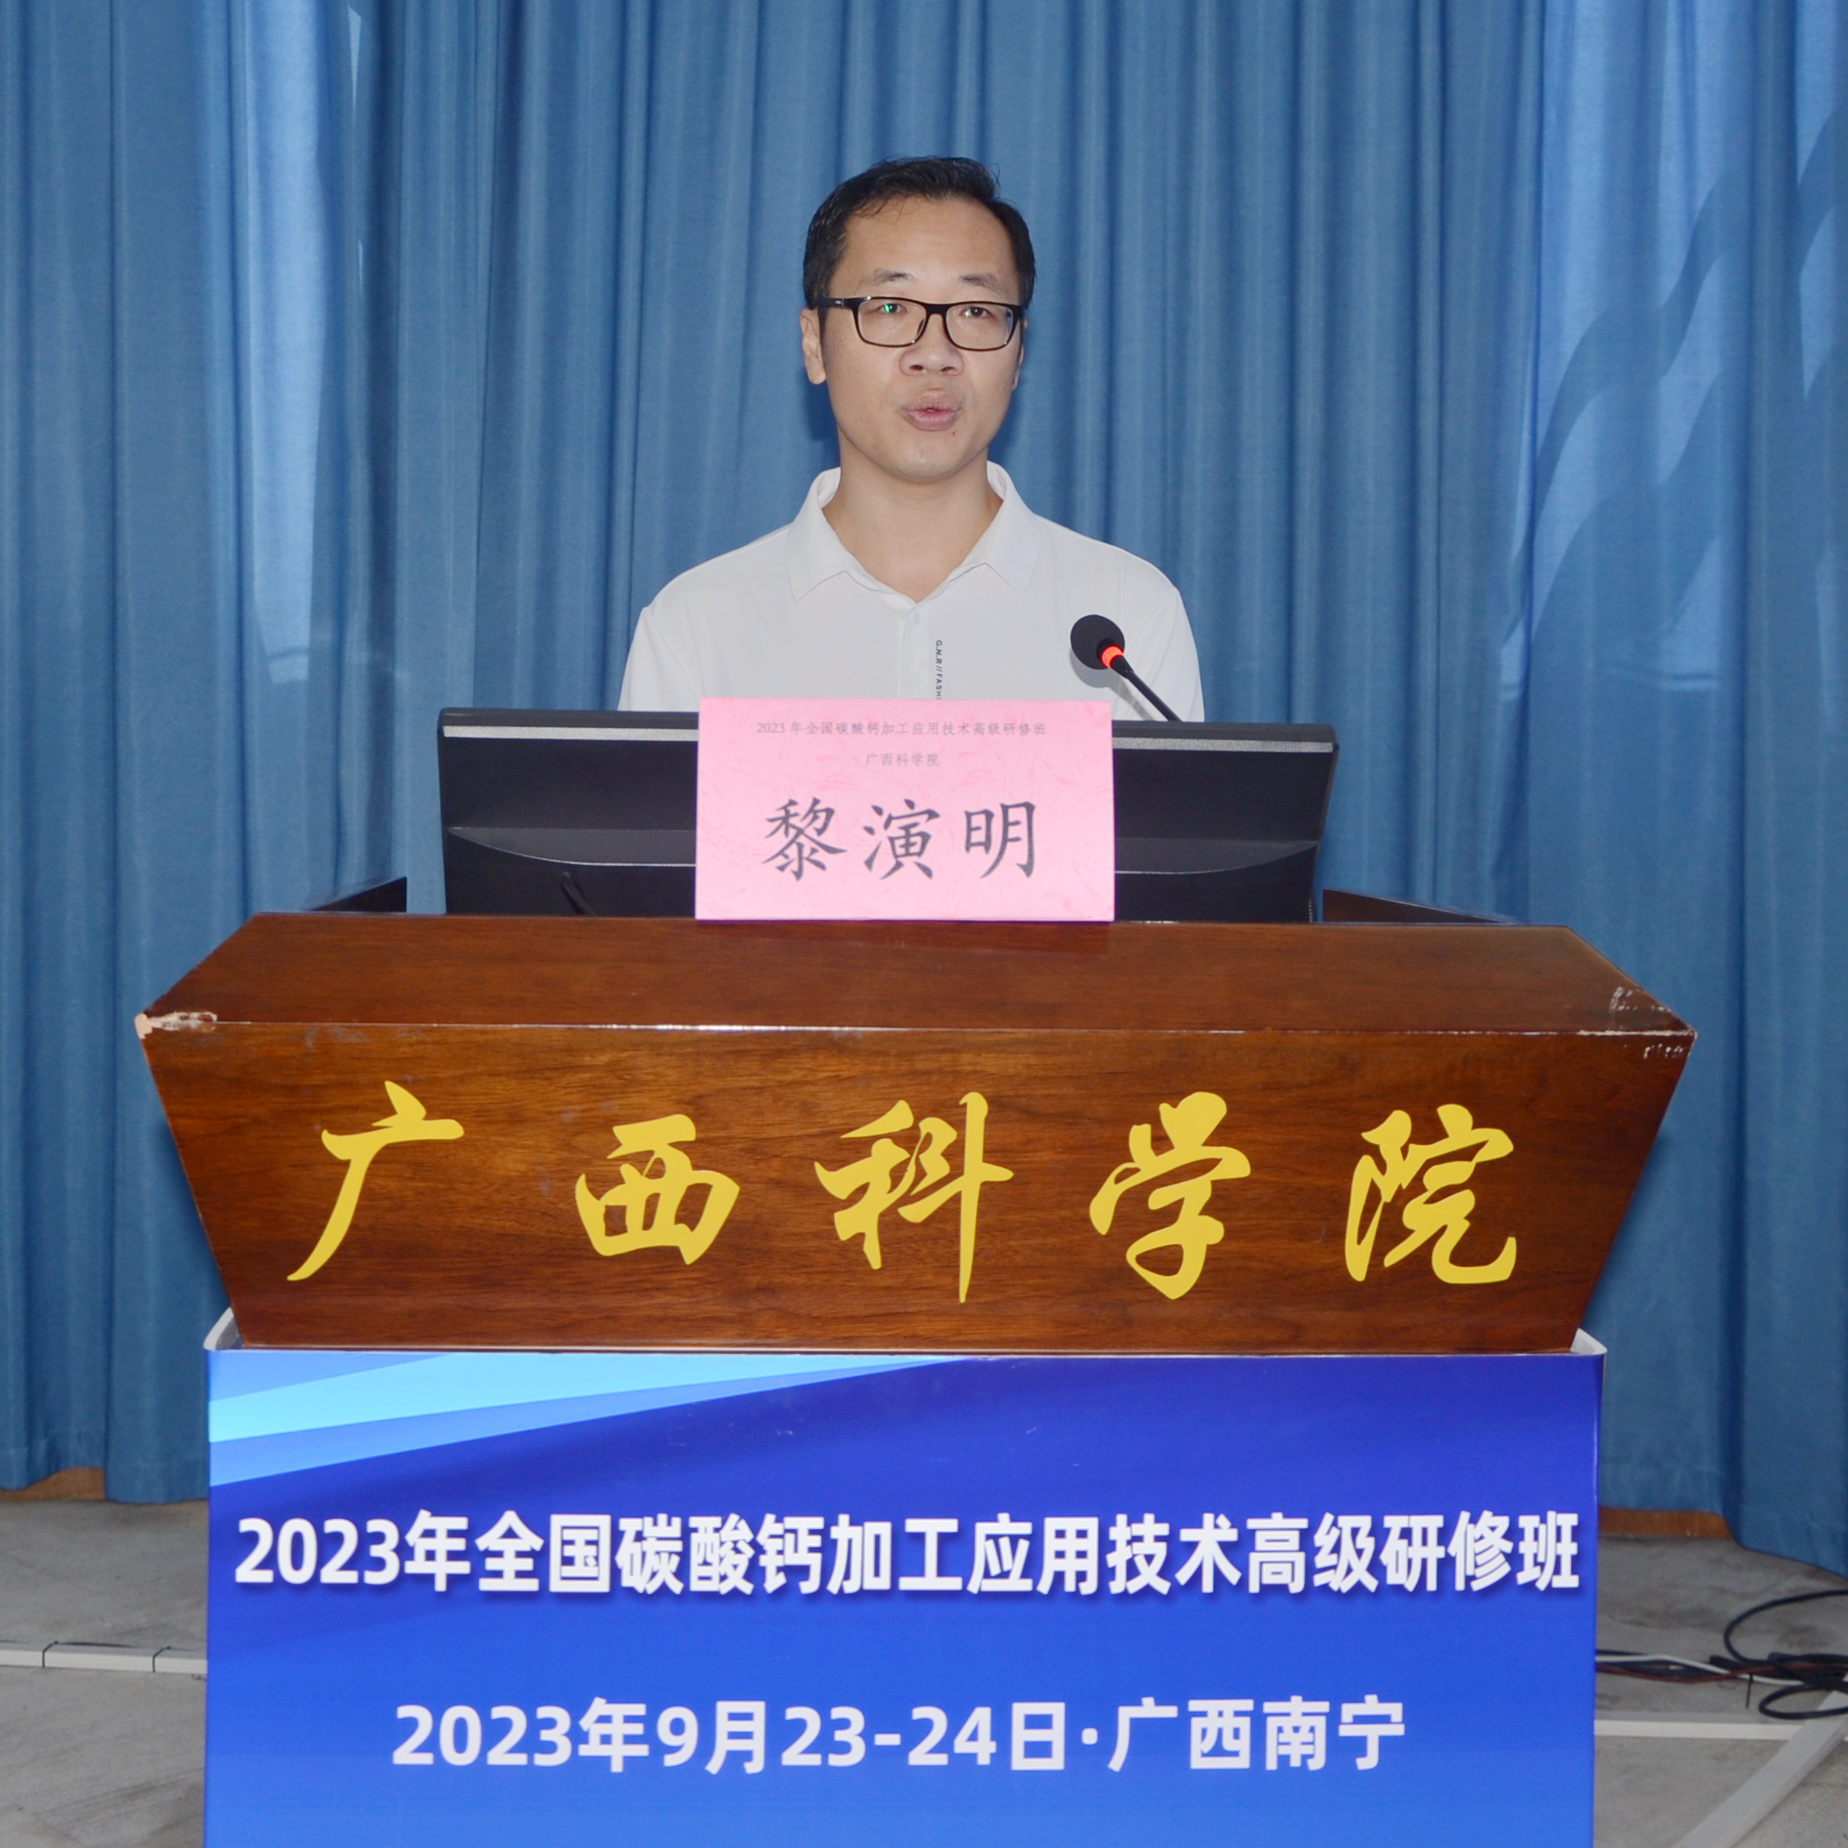 2023年全国碳酸钙加工应用技术高级研修班在广西南宁成功举办！ 　　